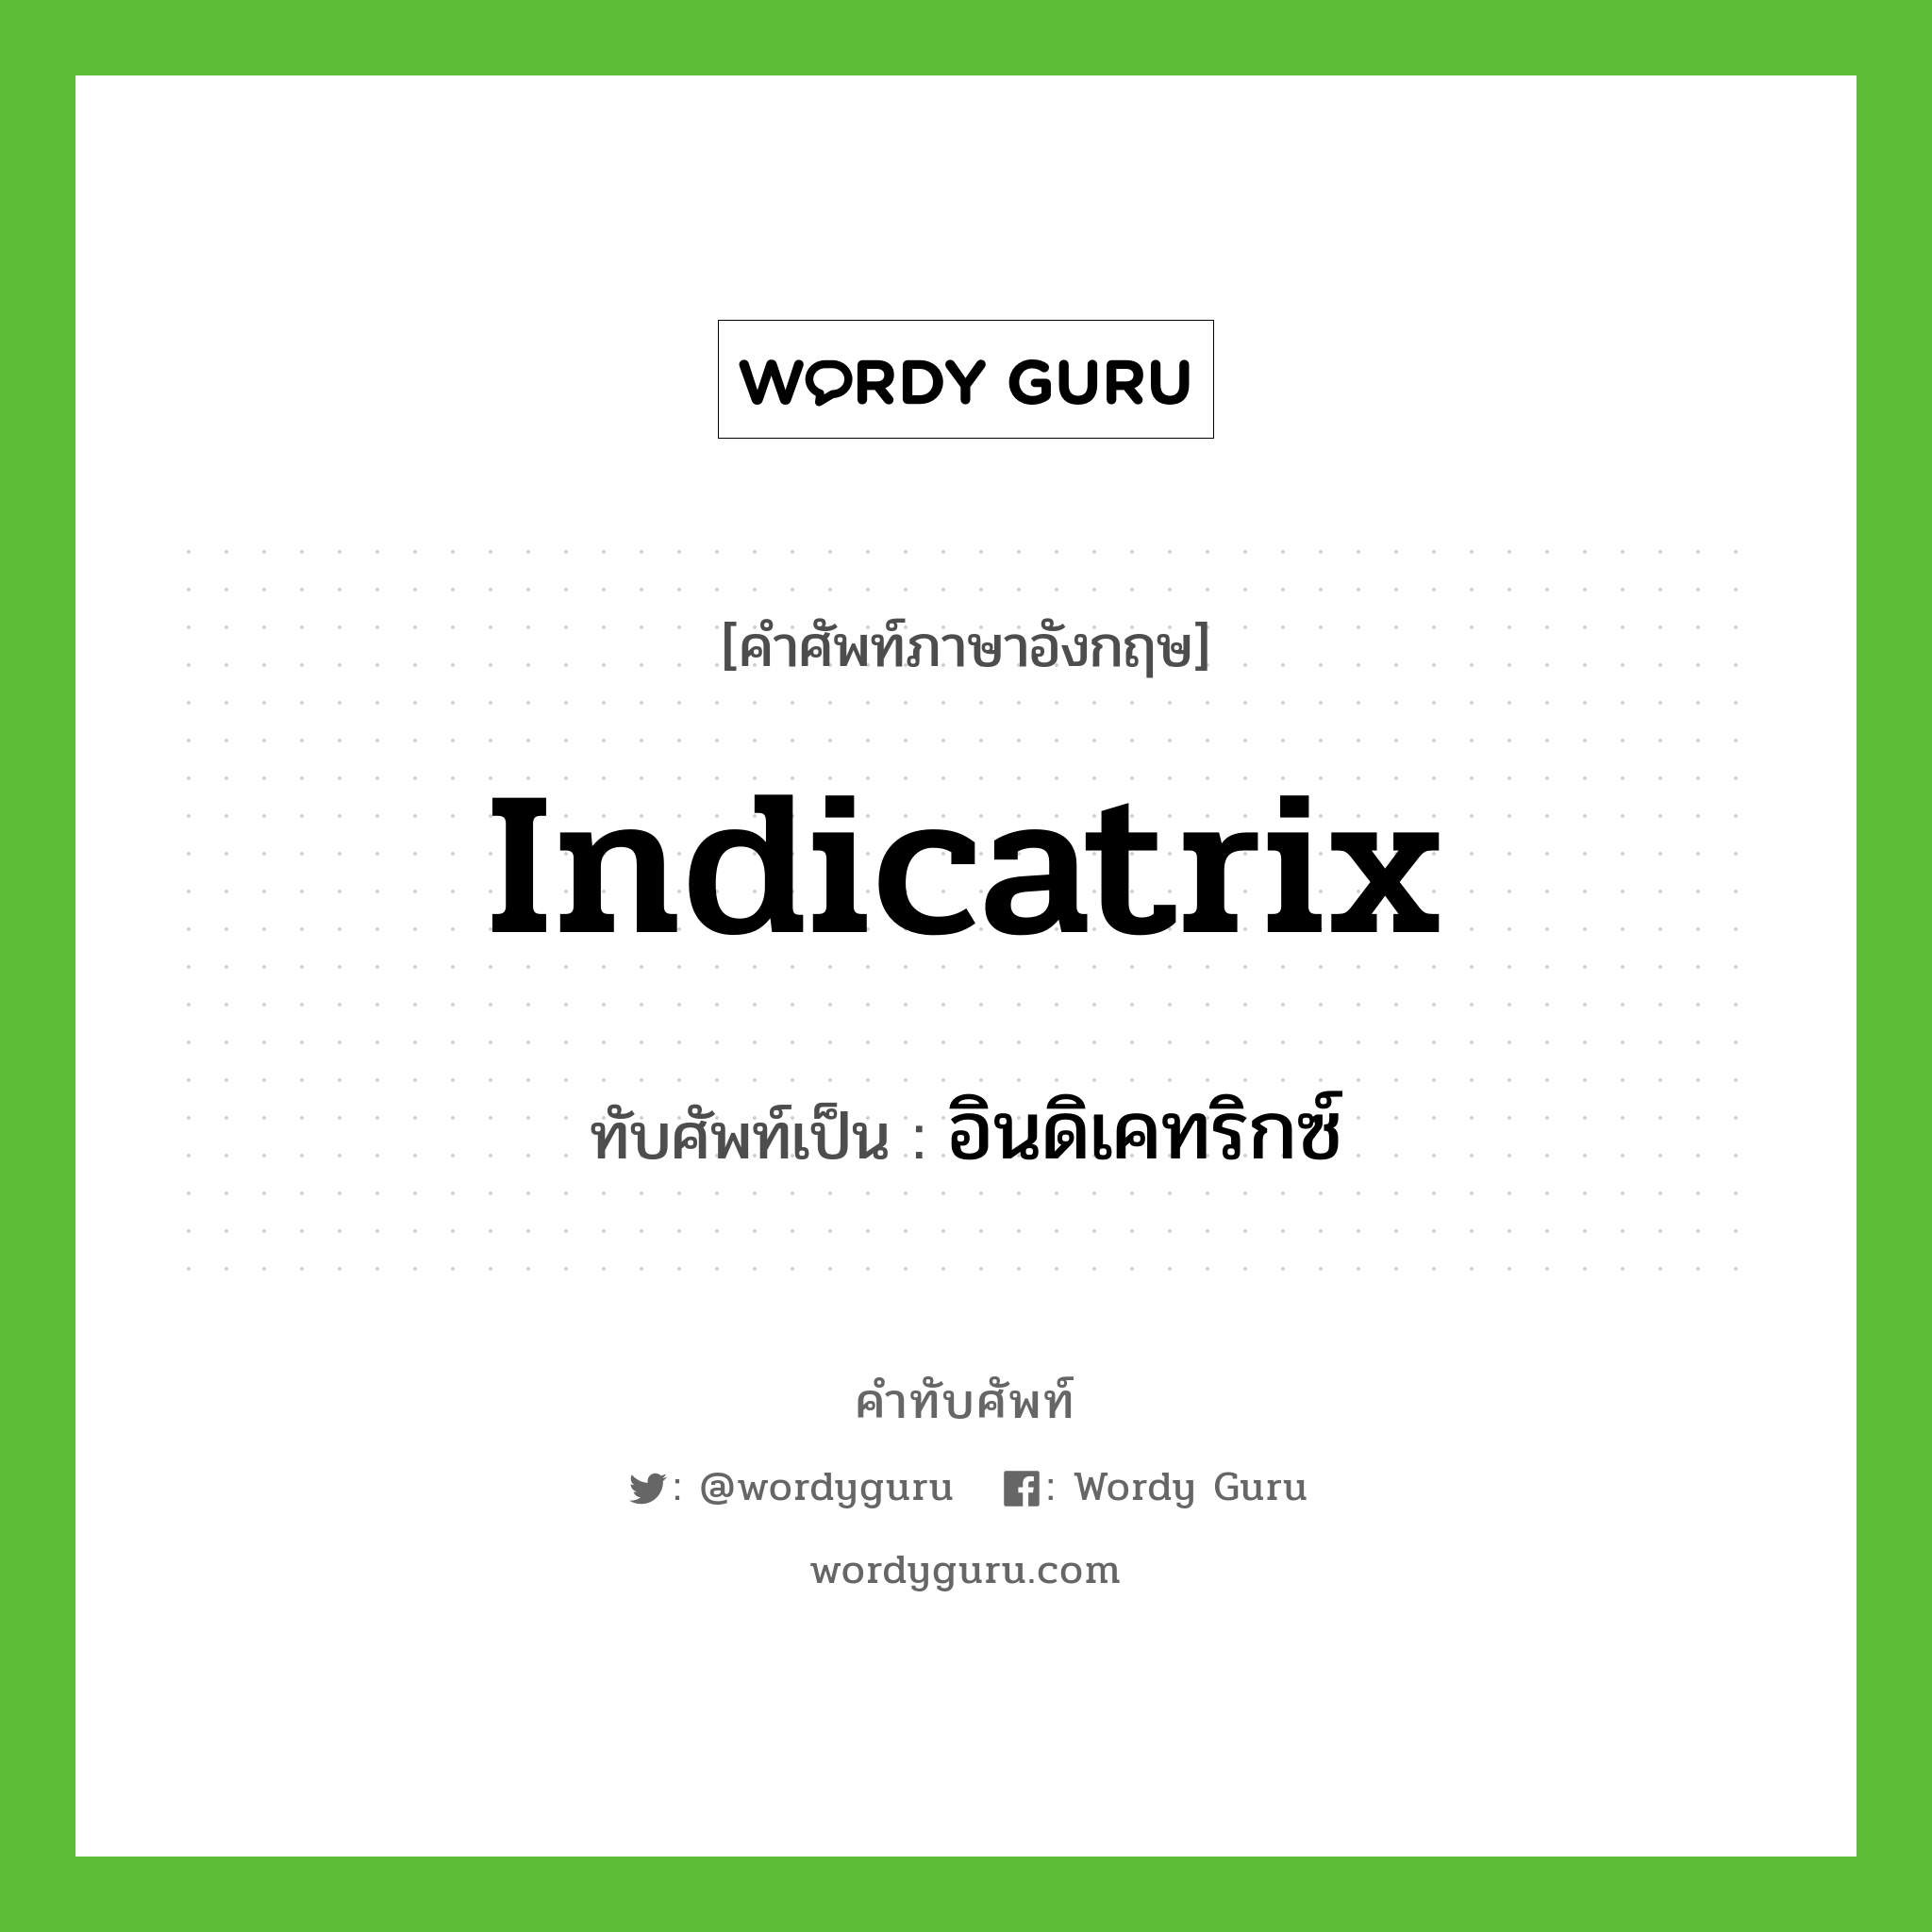 indicatrix เขียนเป็นคำไทยว่าอะไร?, คำศัพท์ภาษาอังกฤษ indicatrix ทับศัพท์เป็น อินดิเคทริกซ์